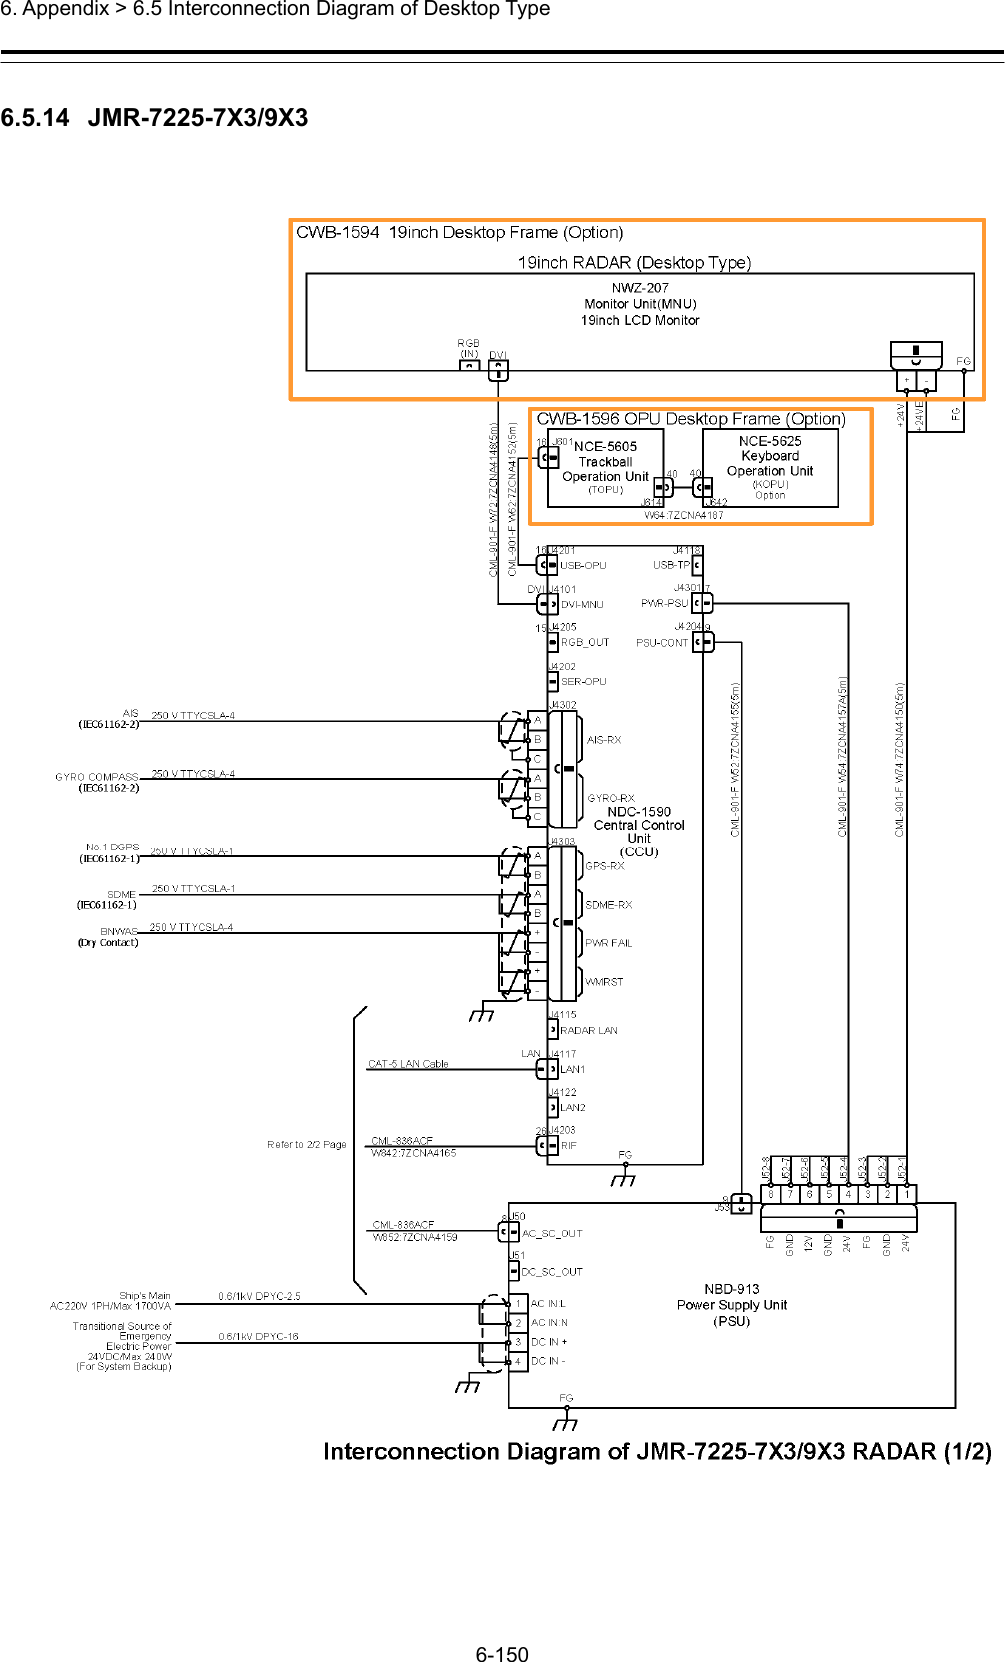  6. Appendix &gt; 6.5 Interconnection Diagram of Desktop Type 6-150  6.5.14  JMR-7225-7X3/9X3  